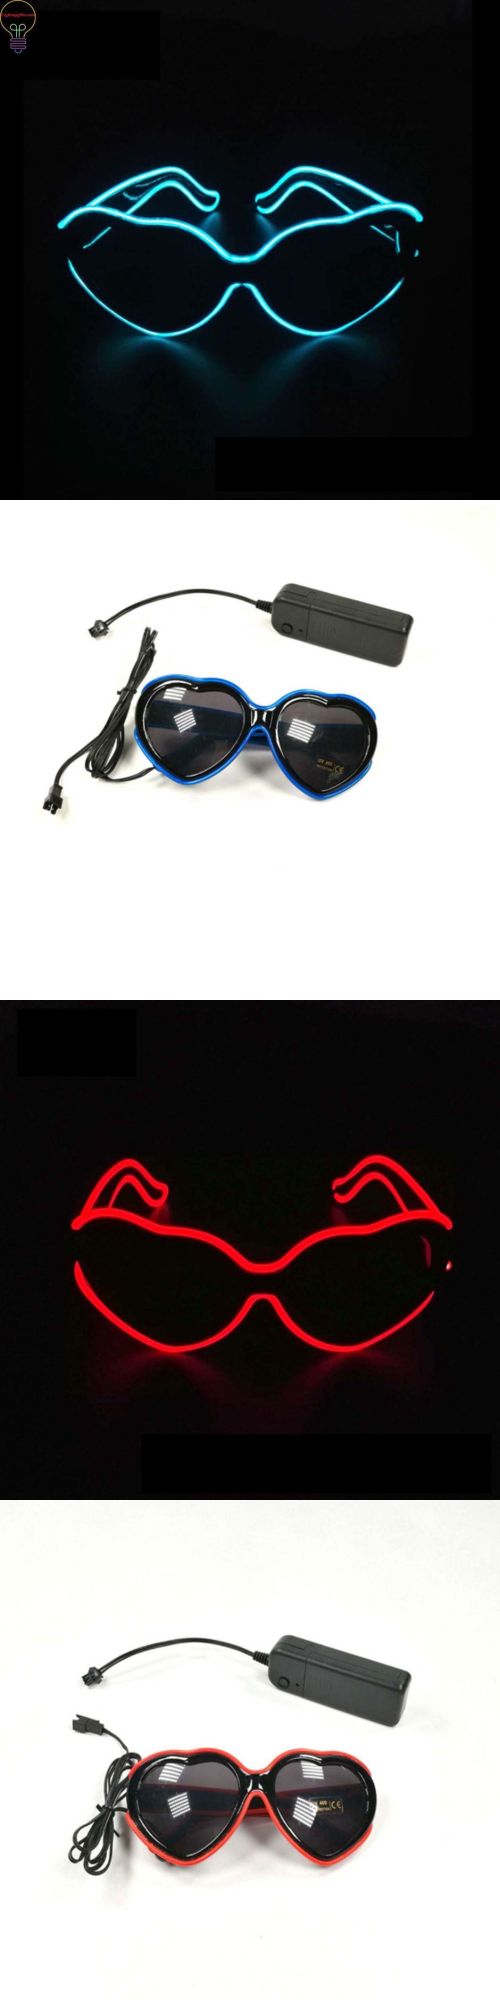 LED Luminous Heart EL Wire Glasses Rave LED Glasses Light